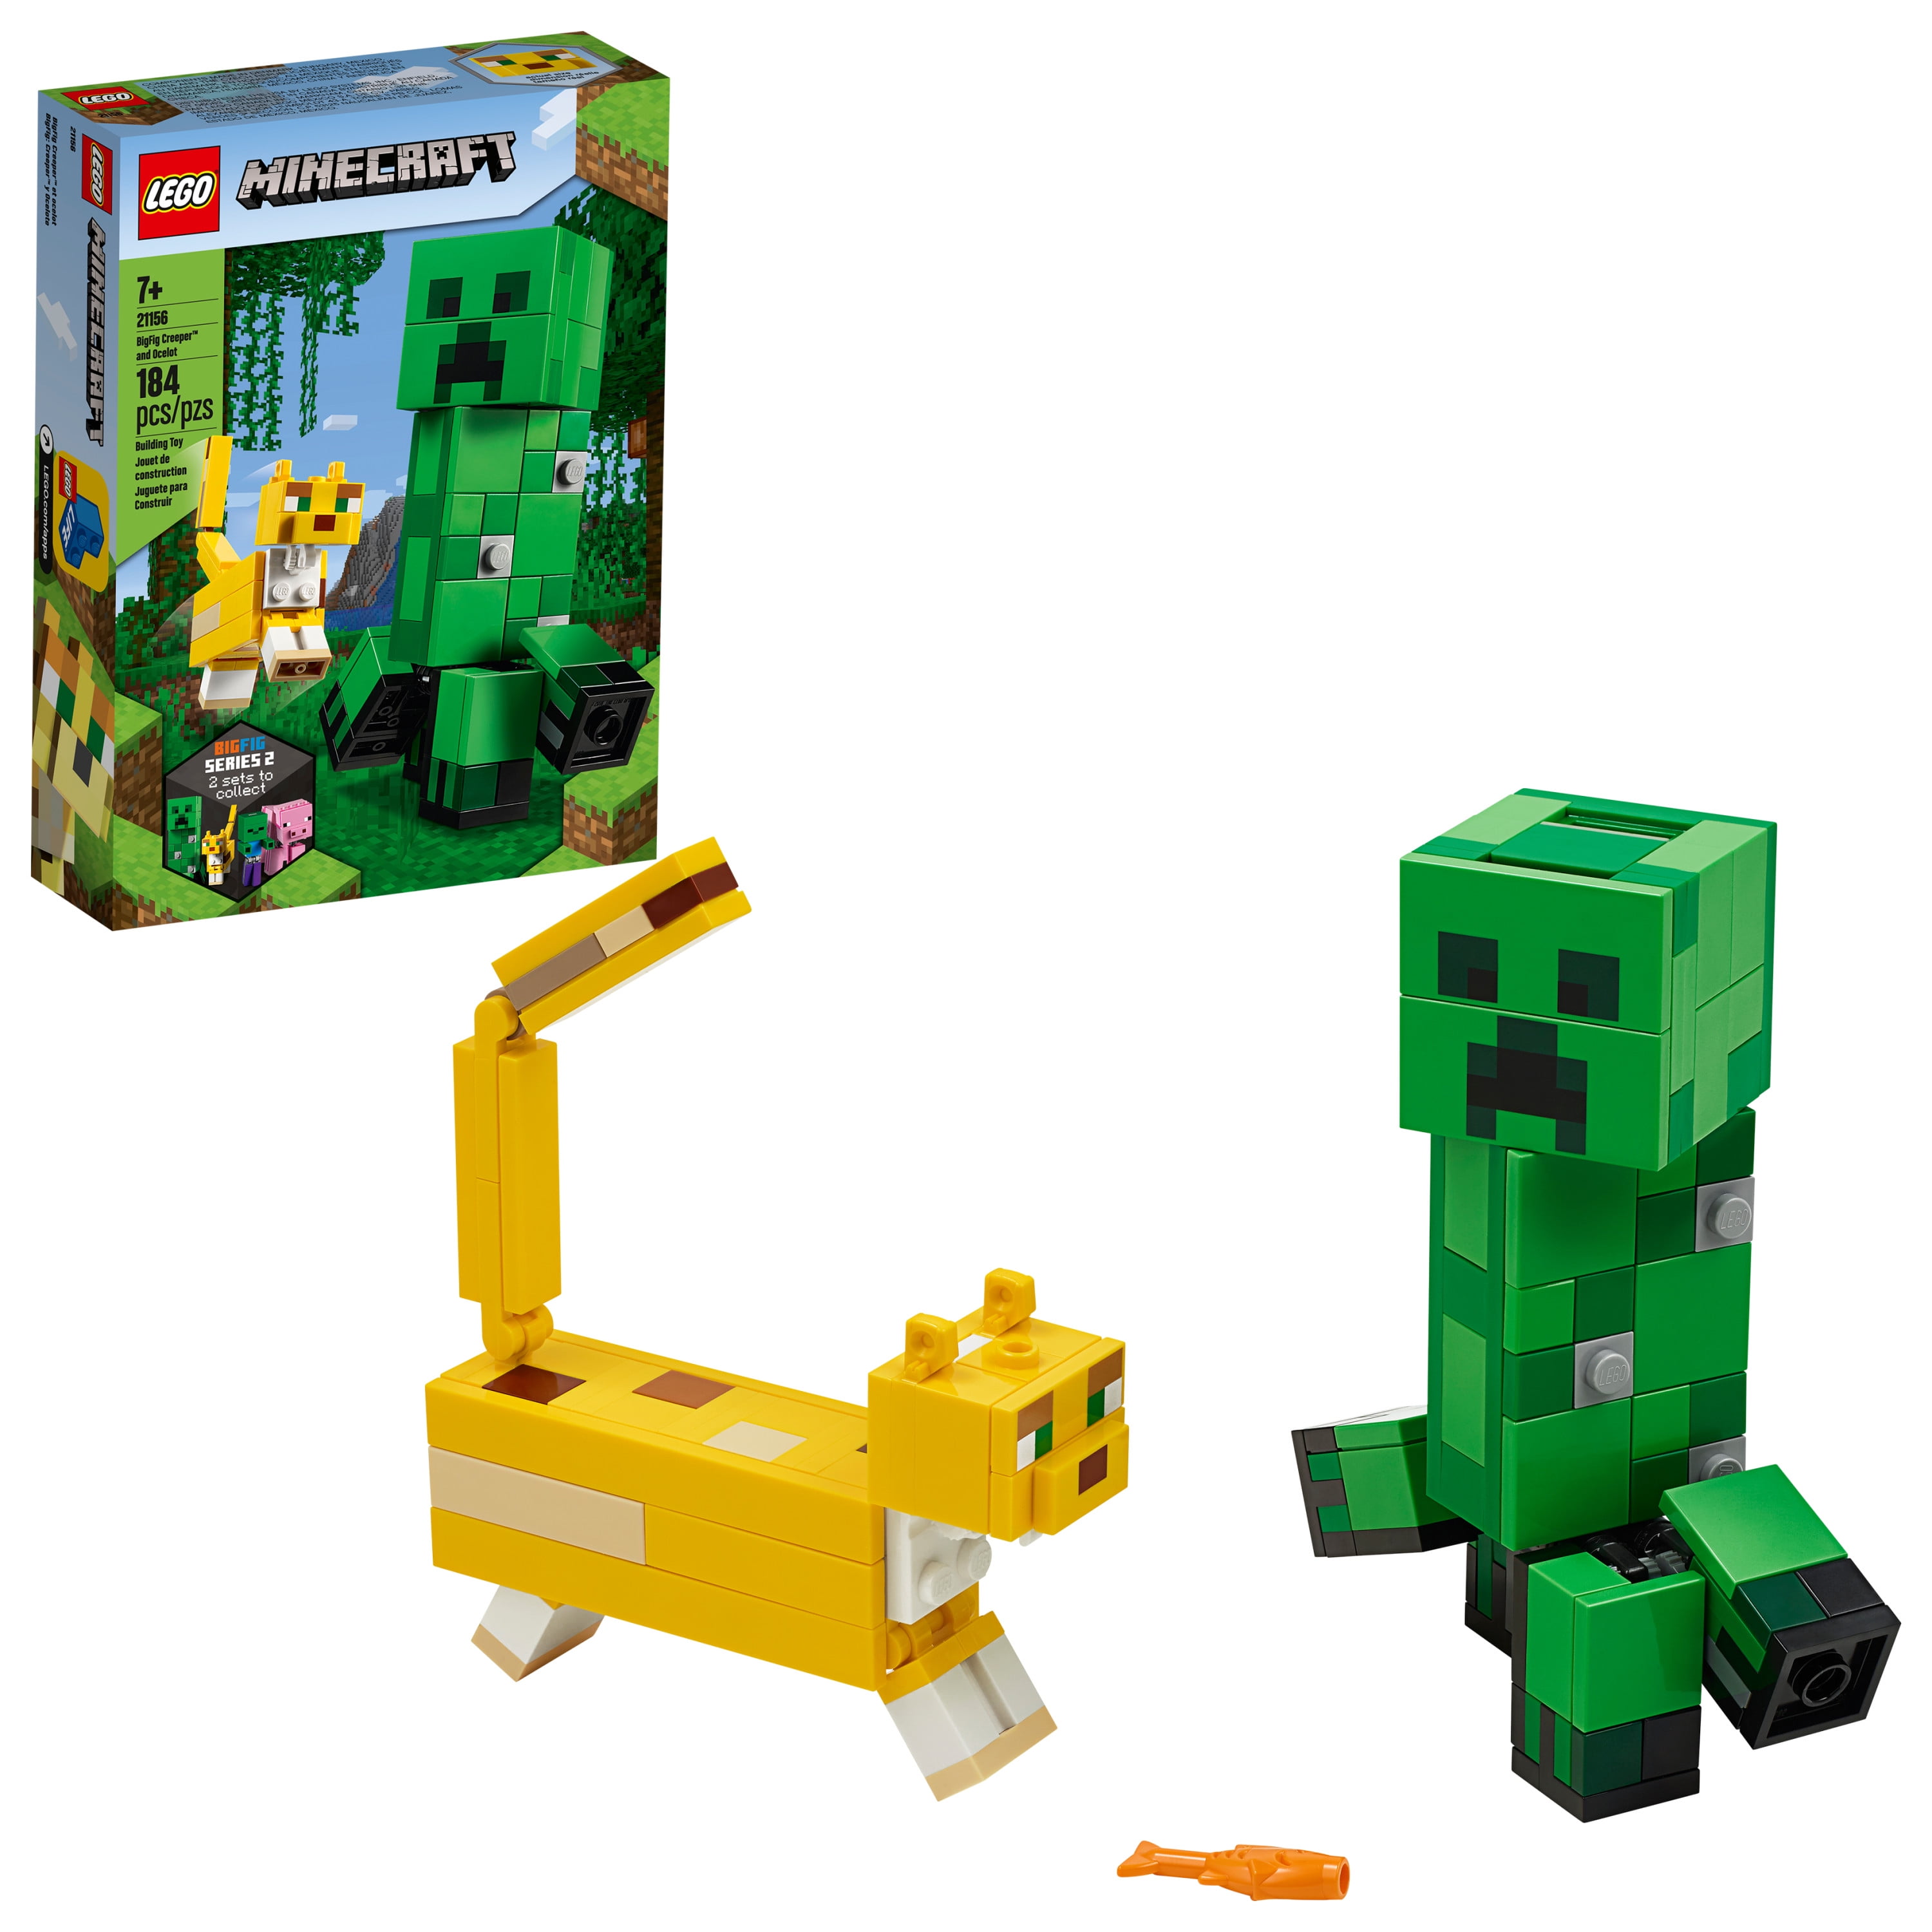 LEGO MINECRAFT STEVE E Creeper Set 30393 & LO SCHELETRO Defense 30394 NUOVO con confezione 